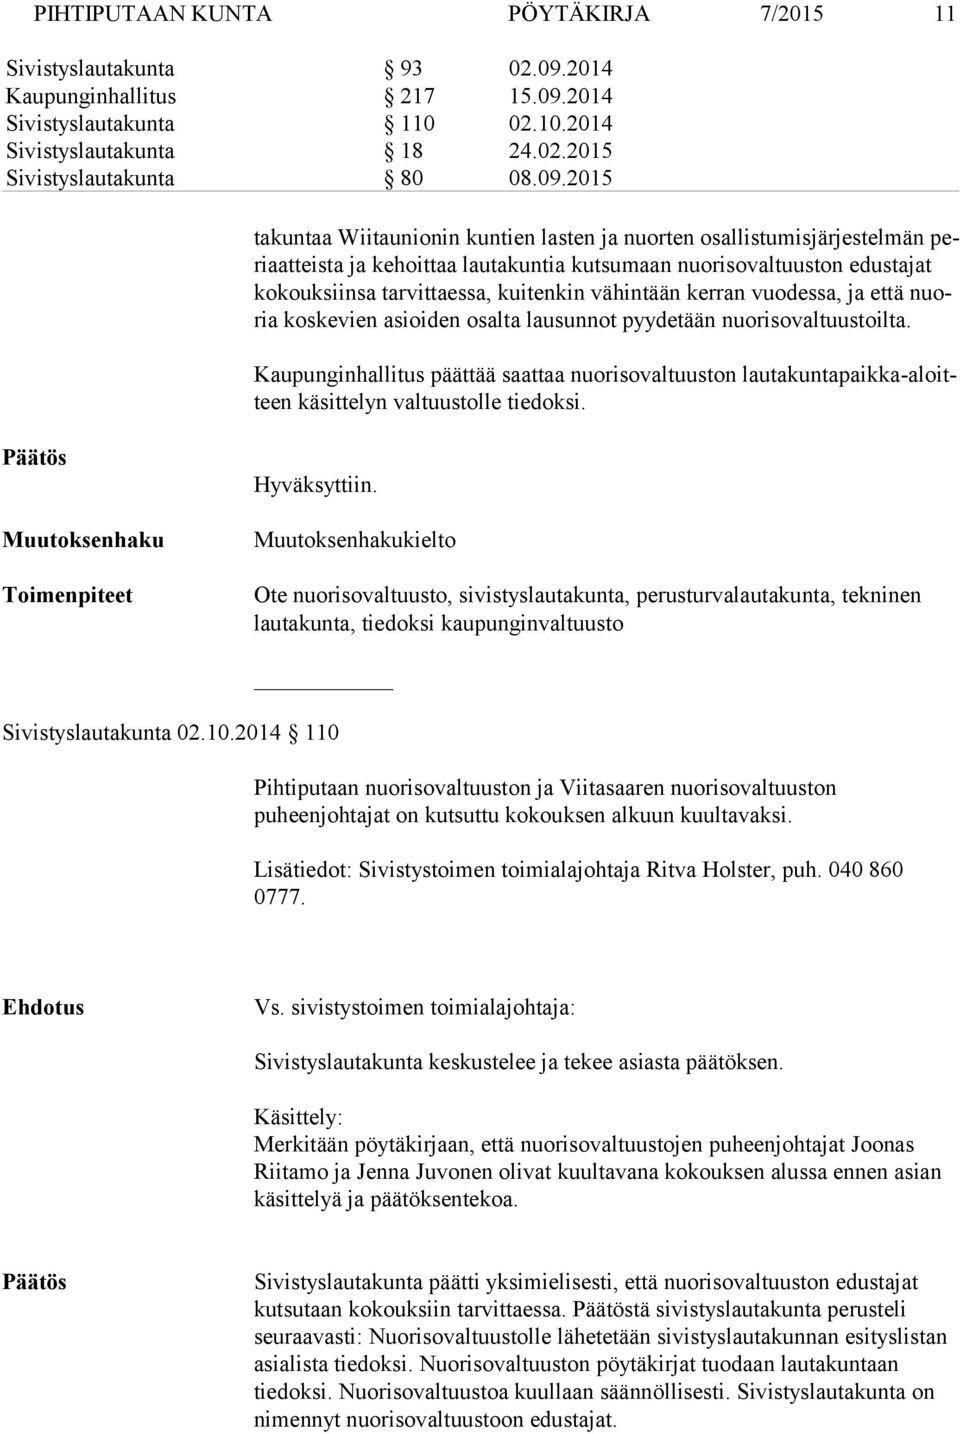 2014 Sivistyslautakunta 110 02.10.2014 Sivistyslautakunta 18 24.02.2015 Sivistyslautakunta 80 08.09.